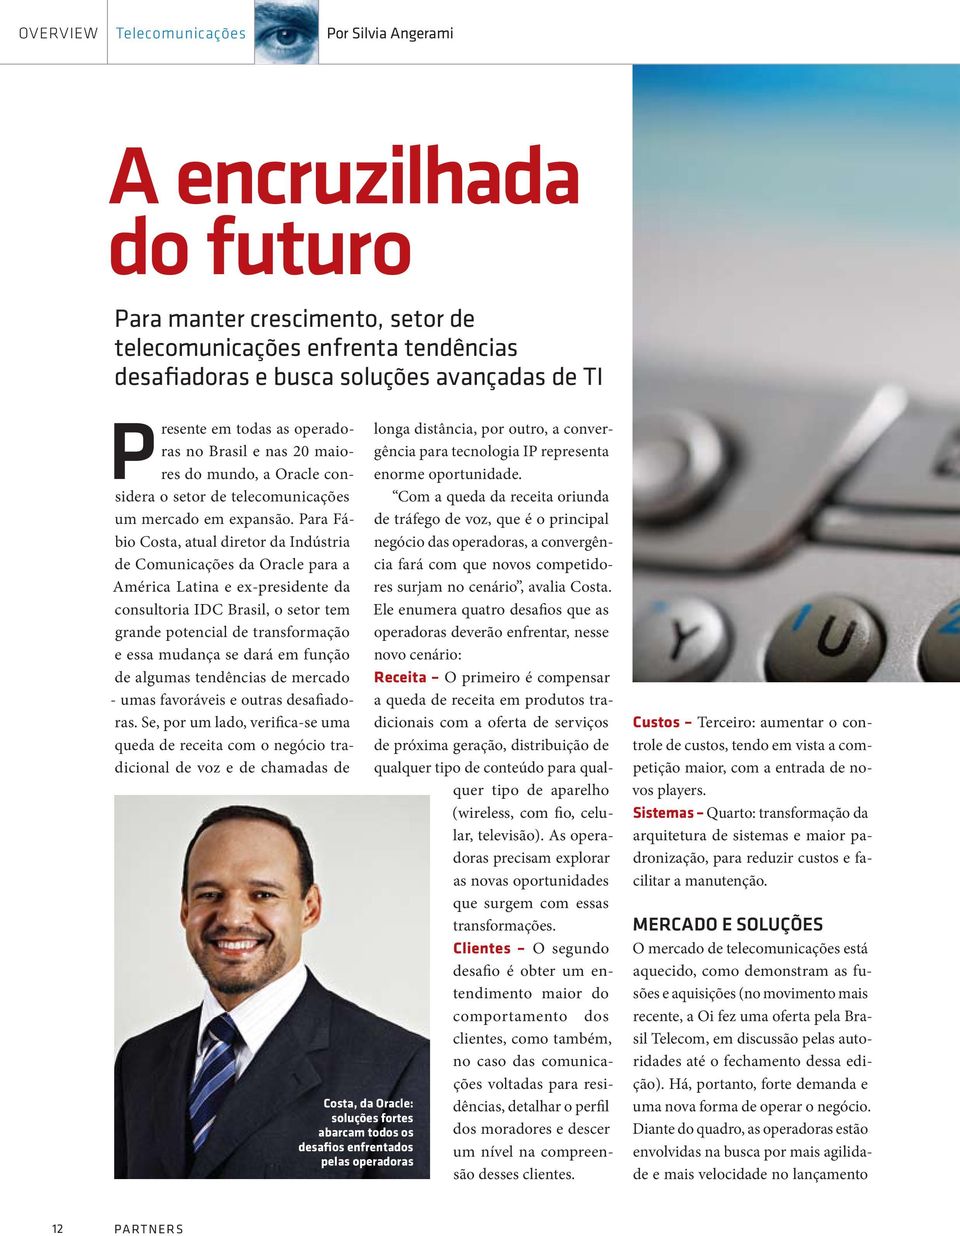 Para Fábio Costa, atual diretor da Indústria de Comunicações da Oracle para a América Latina e ex-presidente da consultoria IDC Brasil, o setor tem grande potencial de transformação e essa mudança se